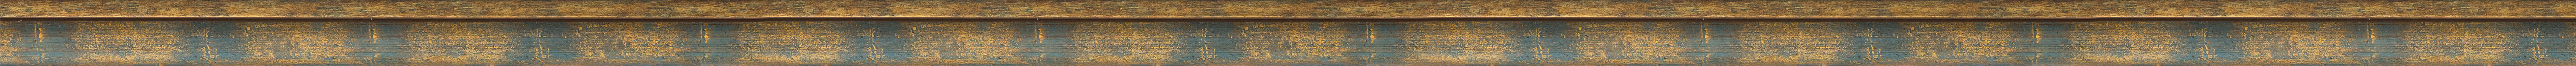 Μπλε-χρυσή κοίλη κορνίζα frame